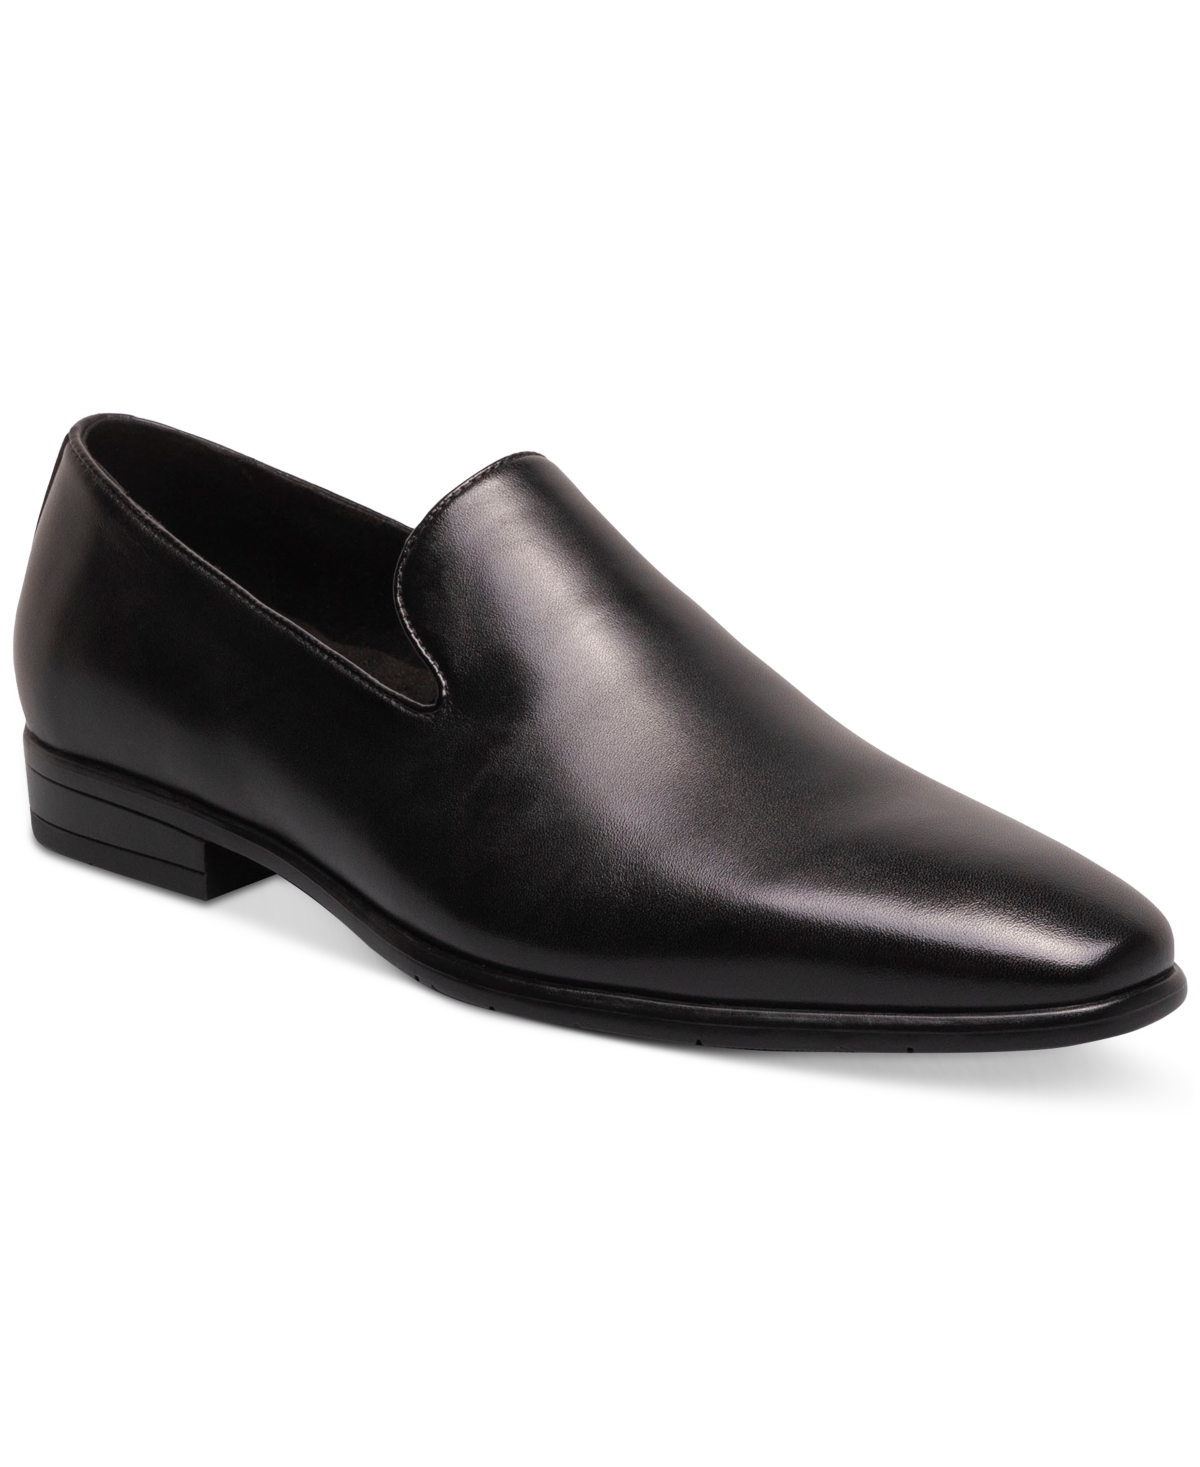 Men's Stevens Slip-On Dress Loafers - Black